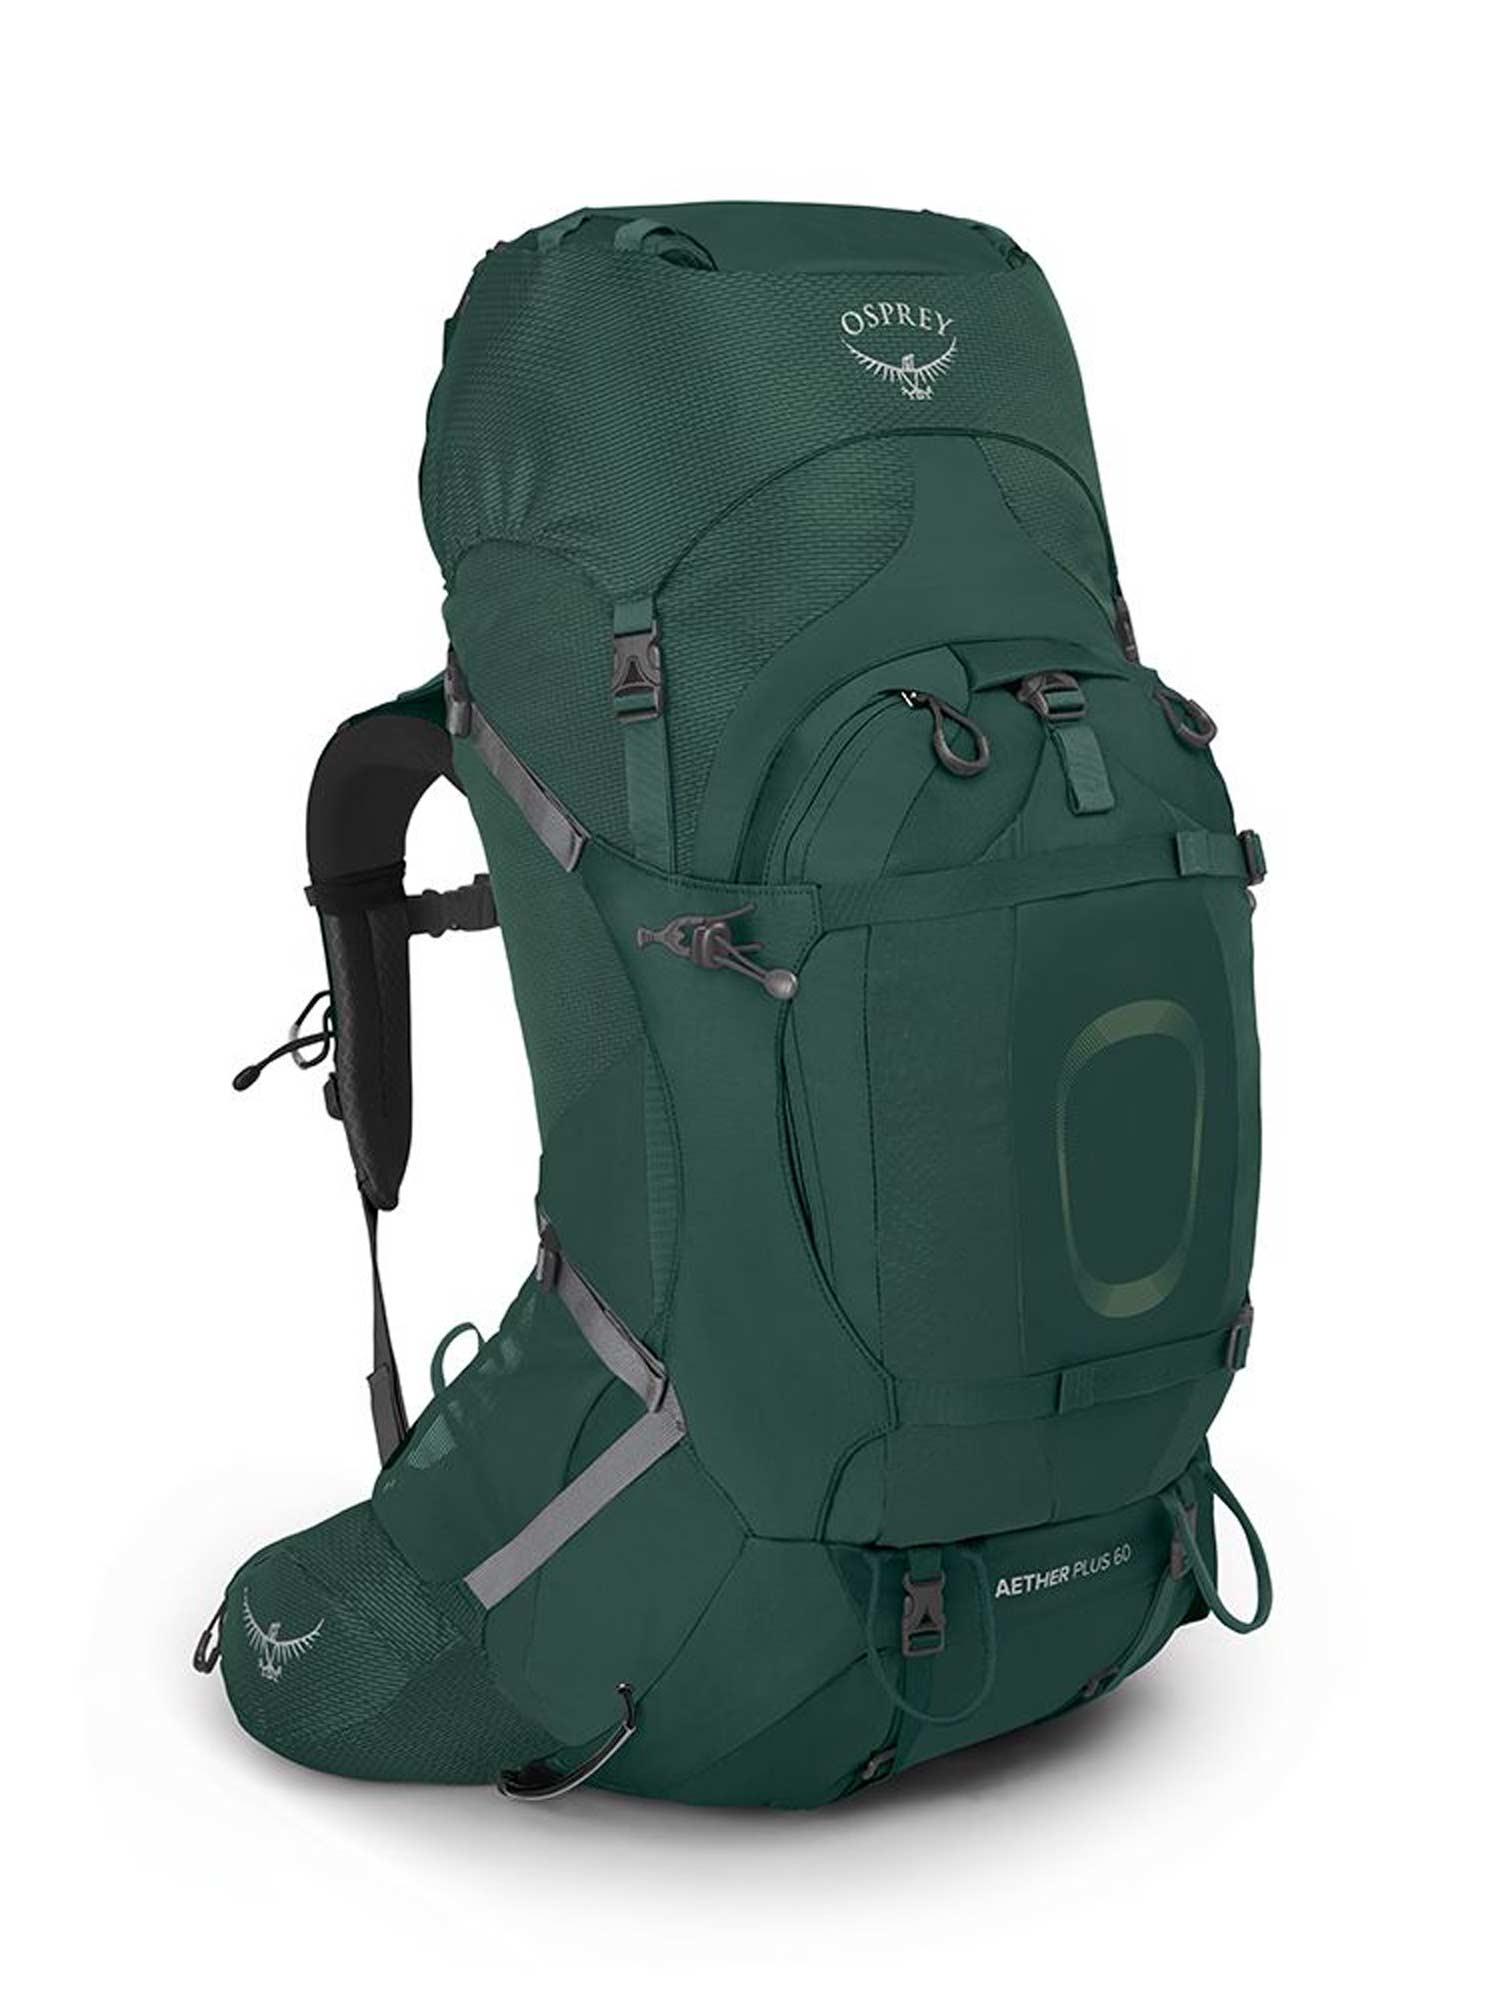 Selected image for OSPREY Muški ranac za planinarenje Aether Plus 60 Backpack tamnozeleni